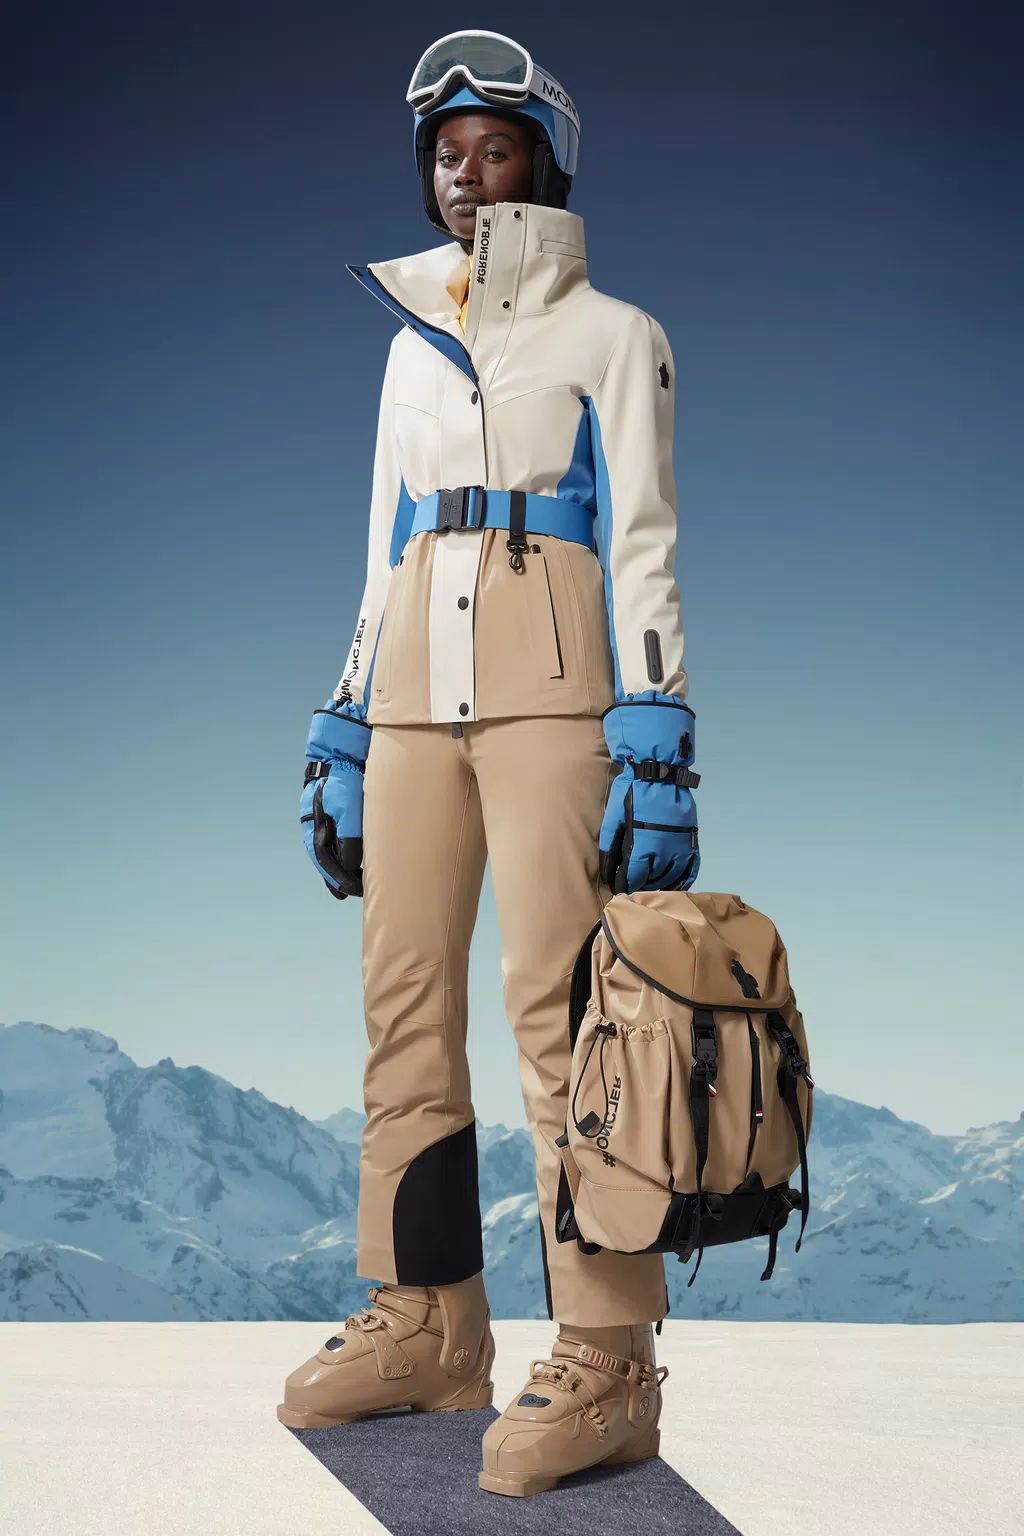 Pantalones de esquí de Mujer - Grenoble